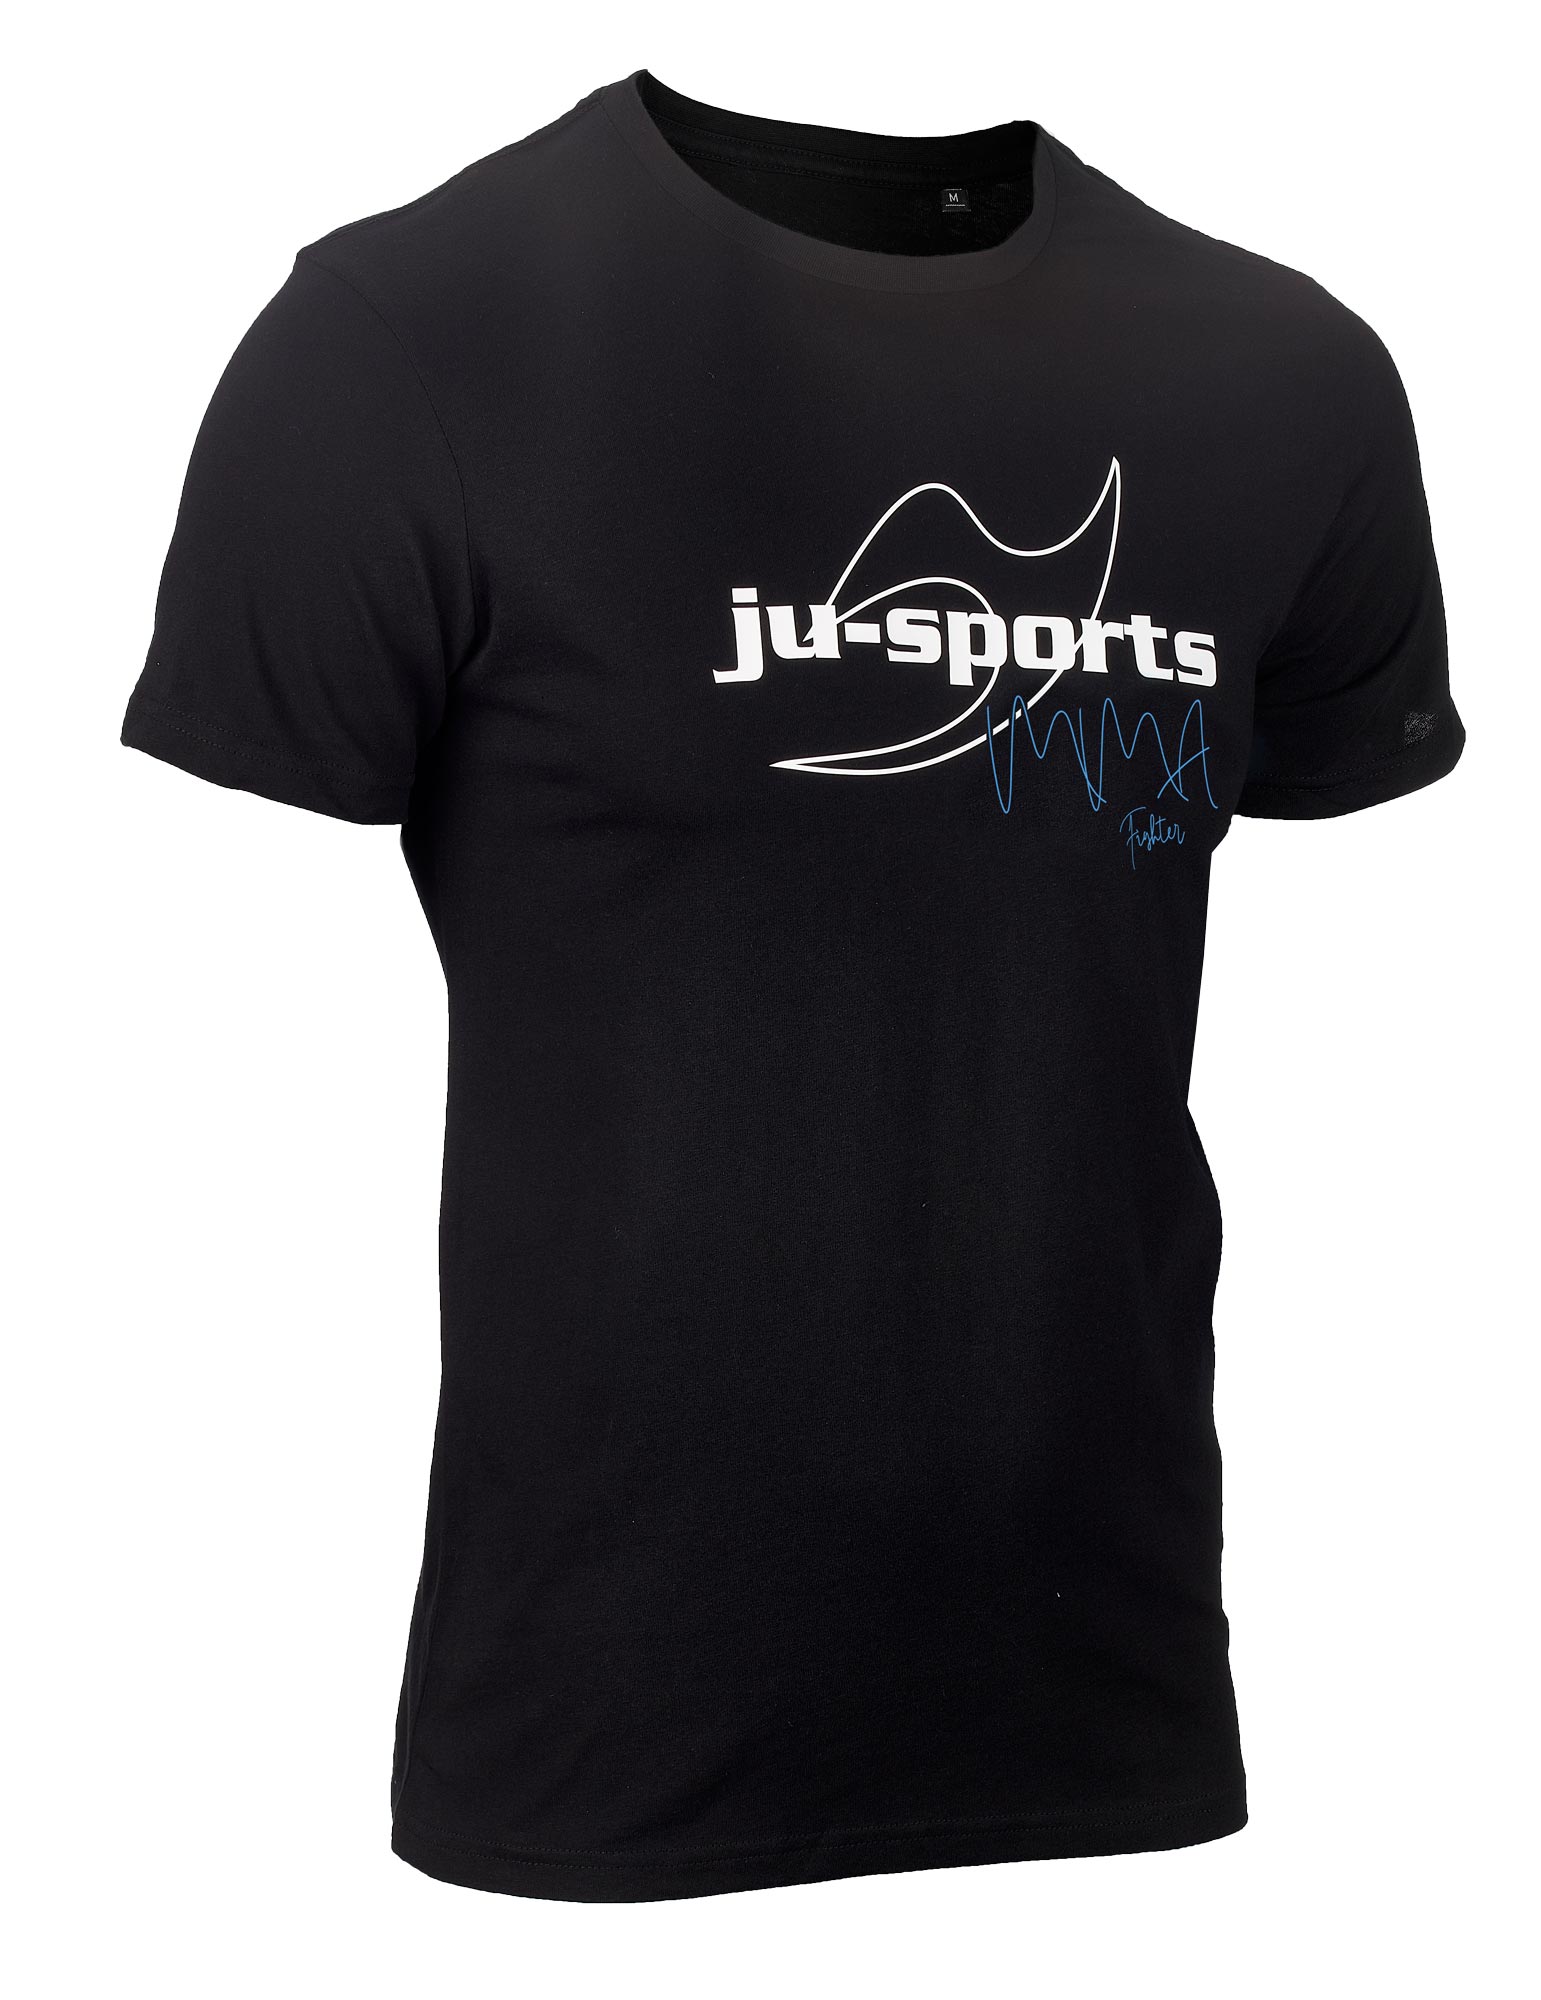 Ju-Sports Signature Line "MMA" T-Shirt